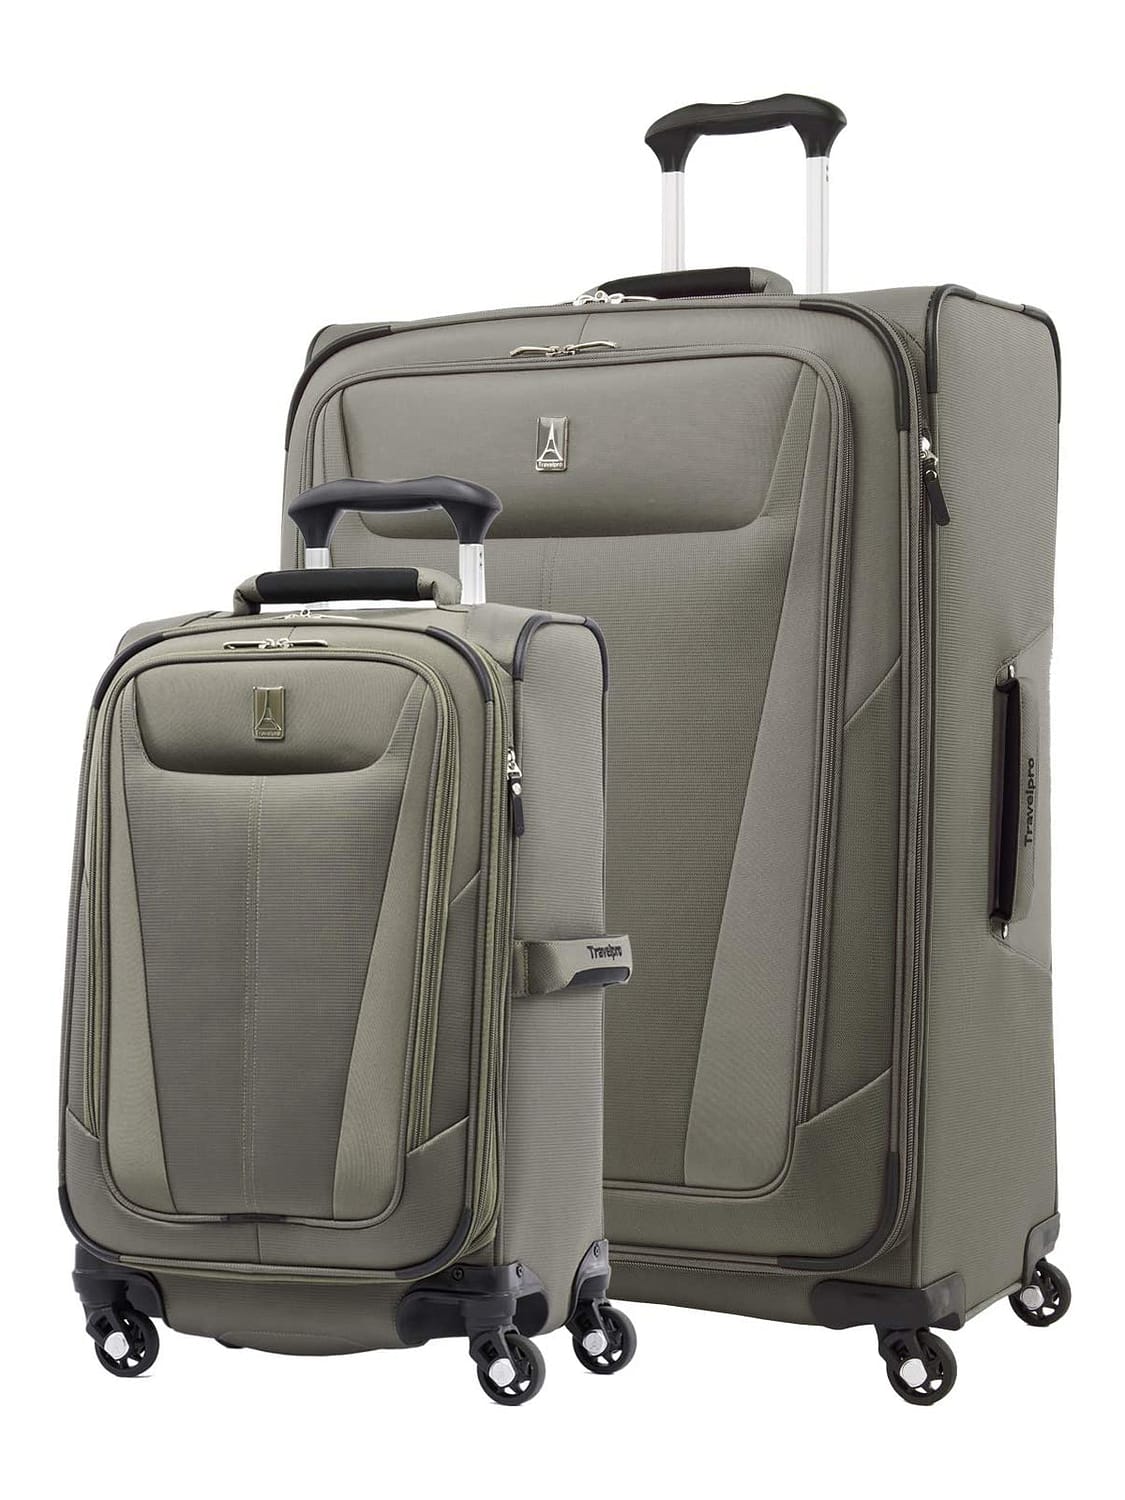 Travelpro Luggage Set